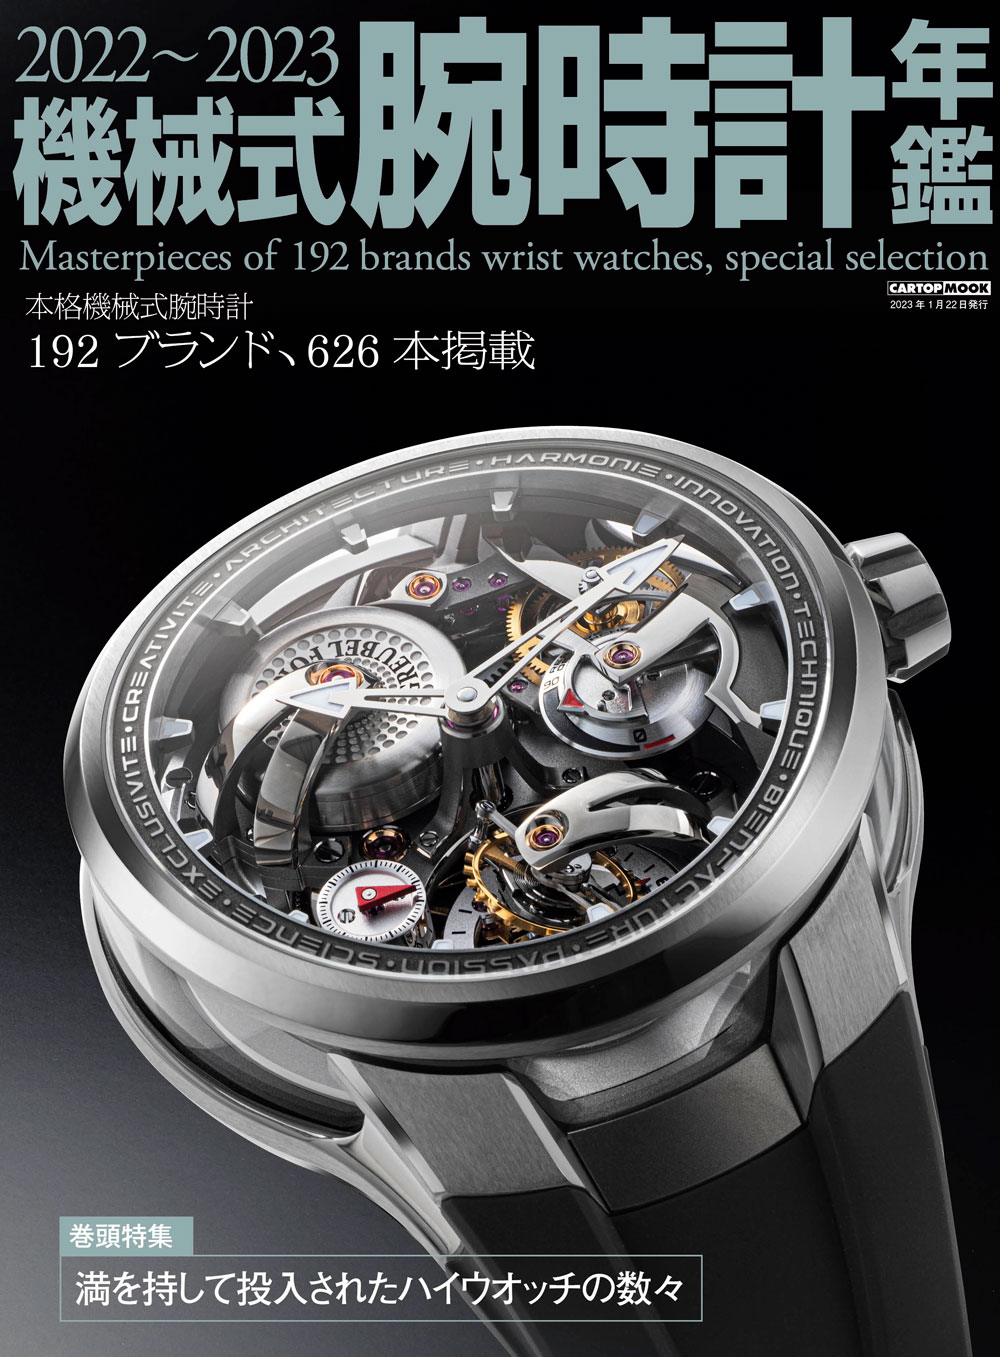 C's-Factory｜書籍｜2022-2023機械式腕時計年鑑